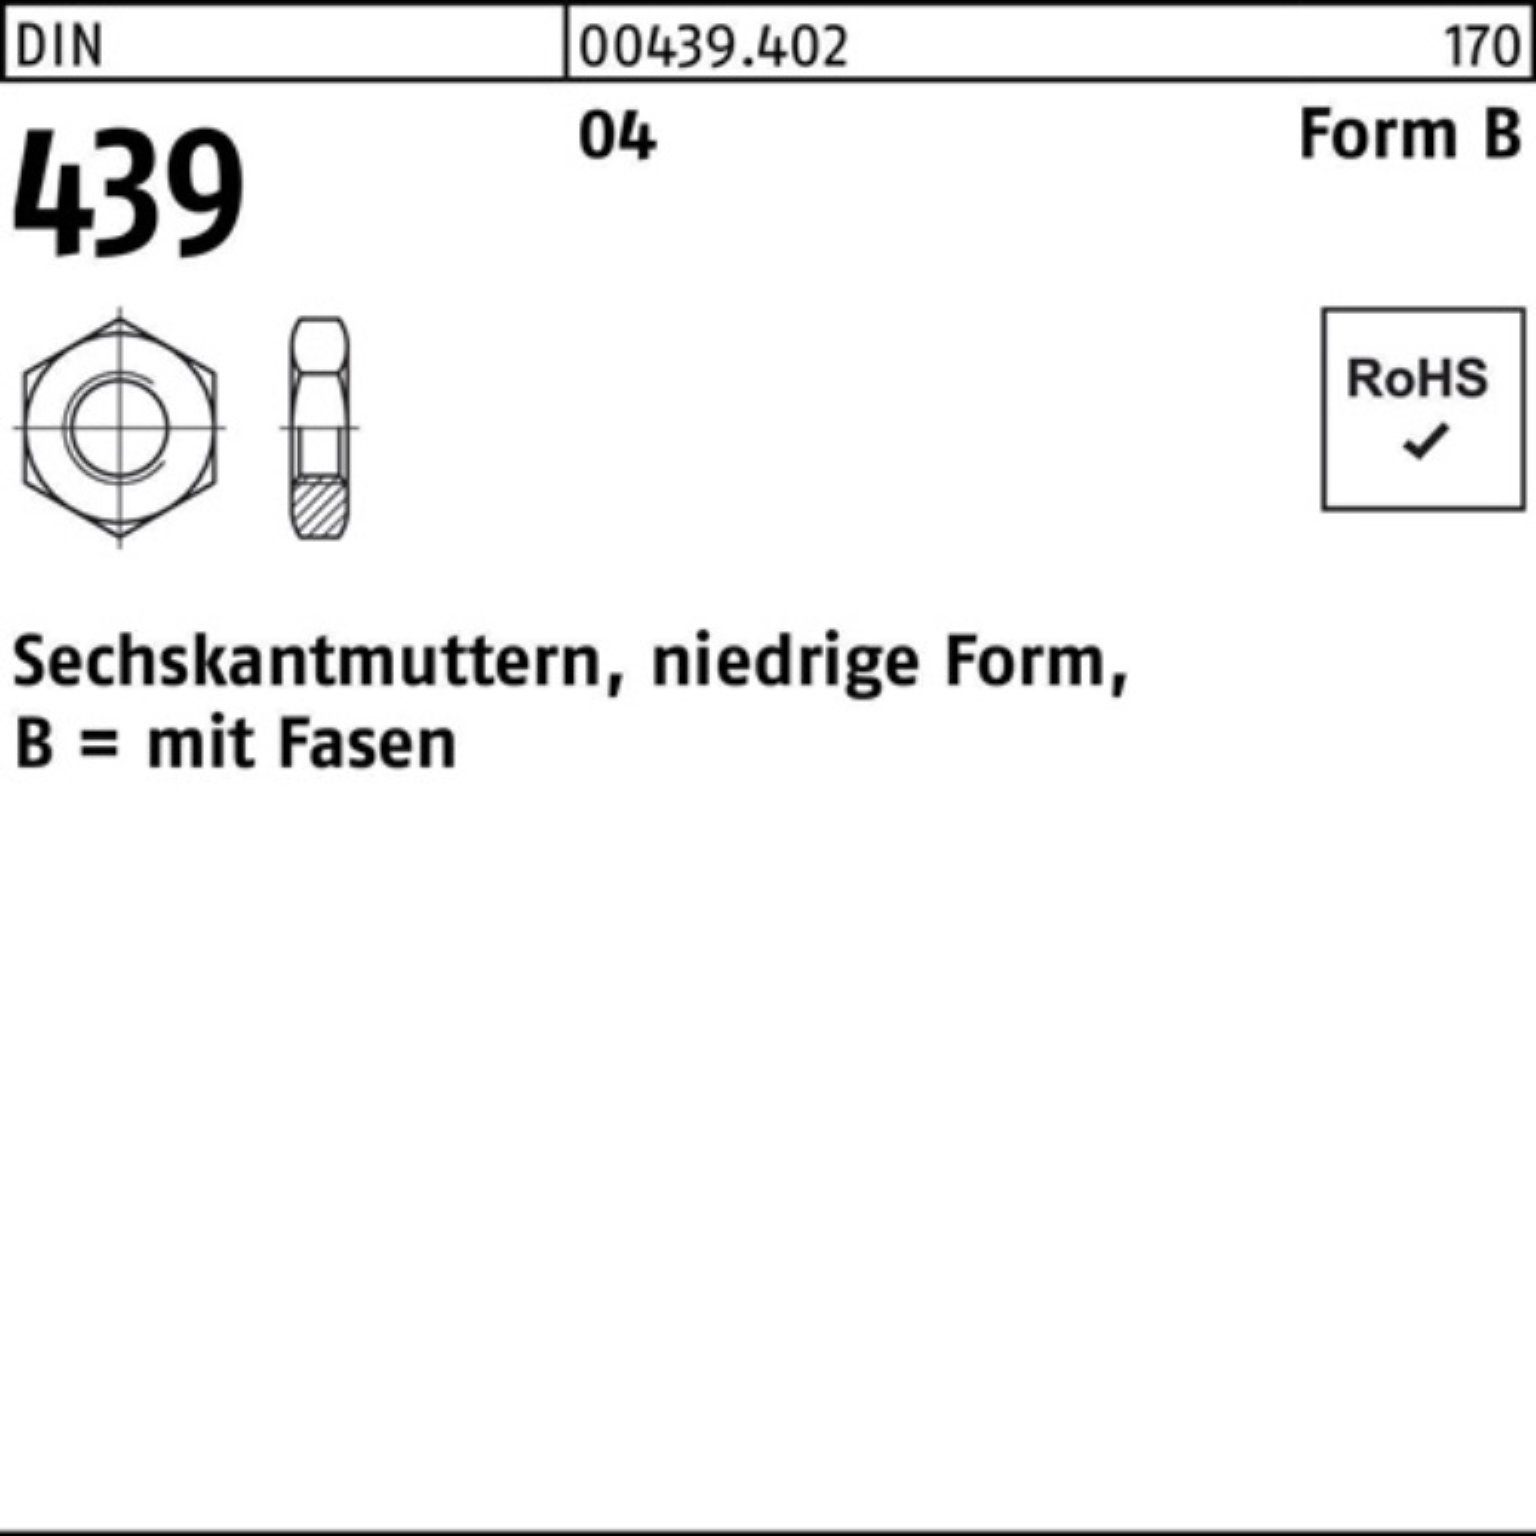 FormB Pack Reyher Automatenstahl DIN Muttern 439/ISO BM 1000er 2 Sechskantmutter 4035